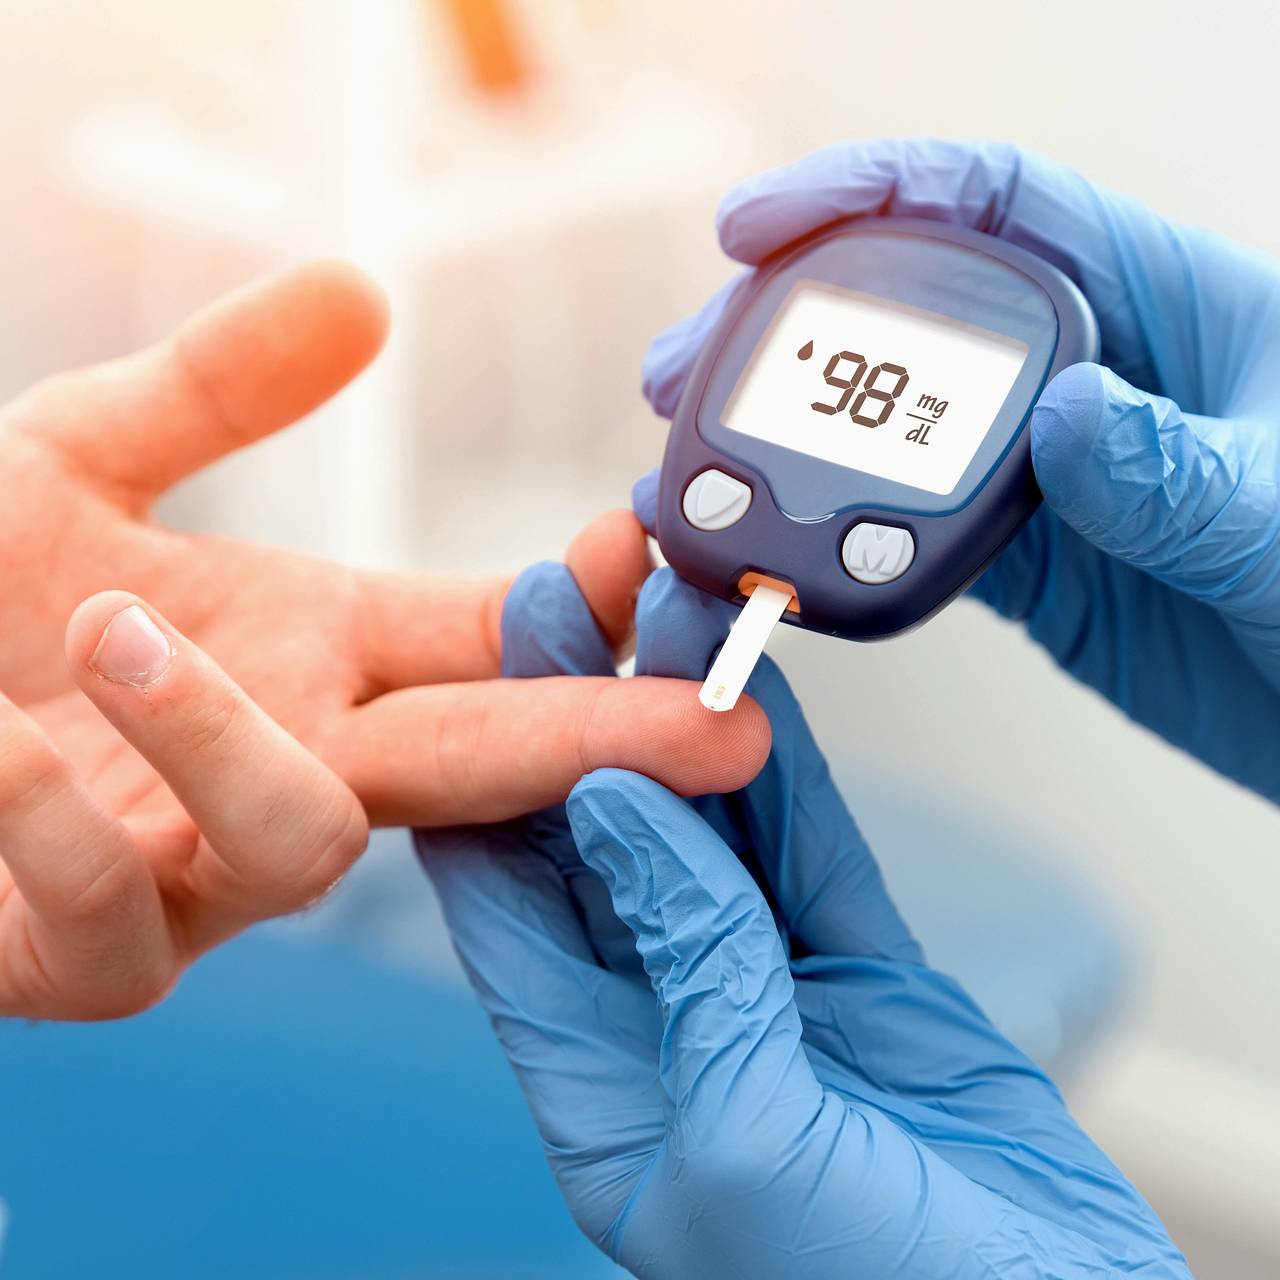 Уровень сахара в крови: норма и патология. Когда обратиться к врачу?